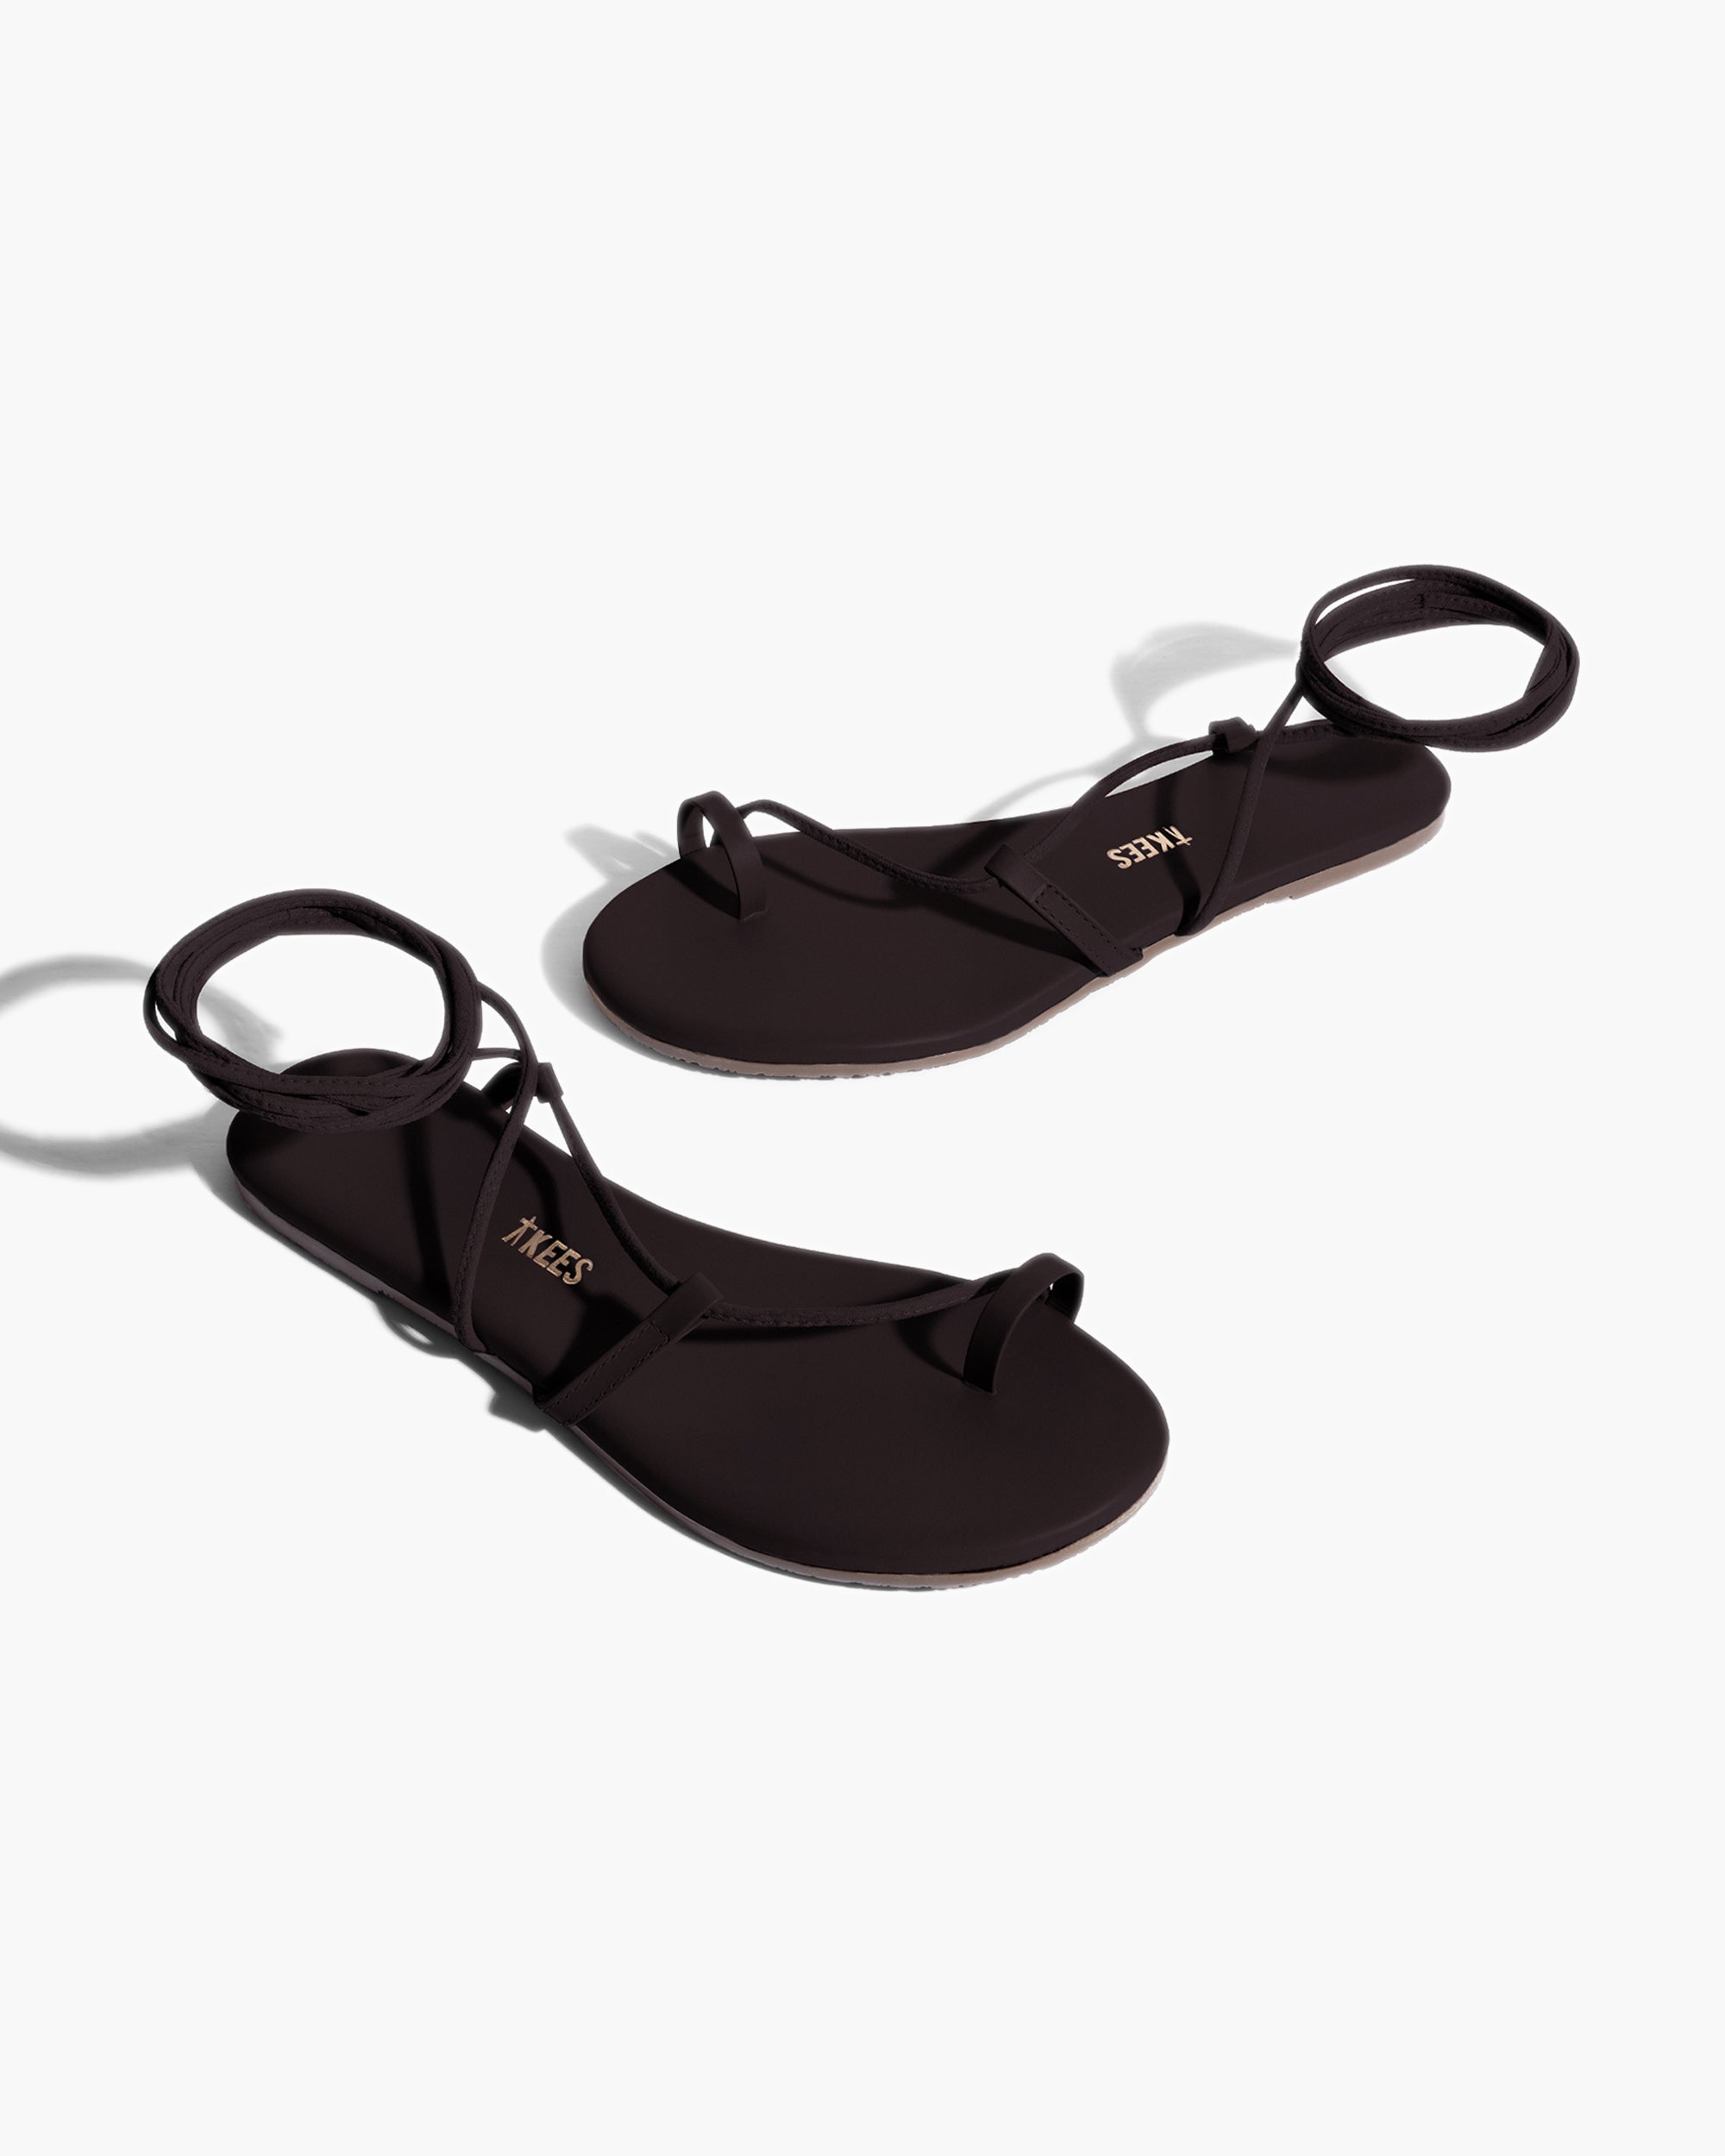 Jo in Black | Sandals | Women's Footwear – TKEES